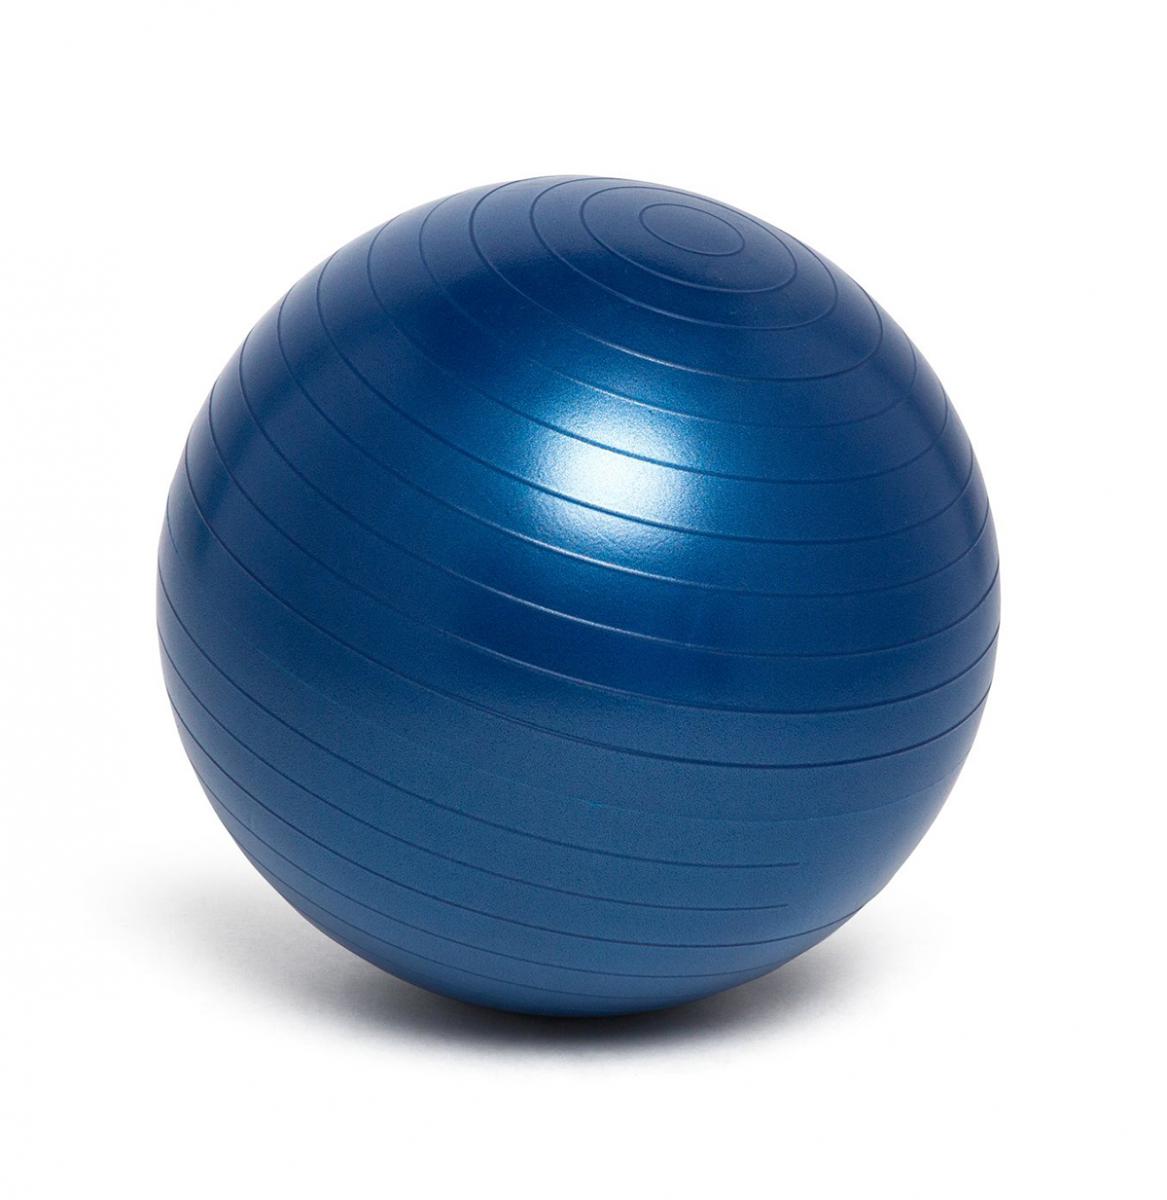  Weighted Balance Ball - Blue 45cm 